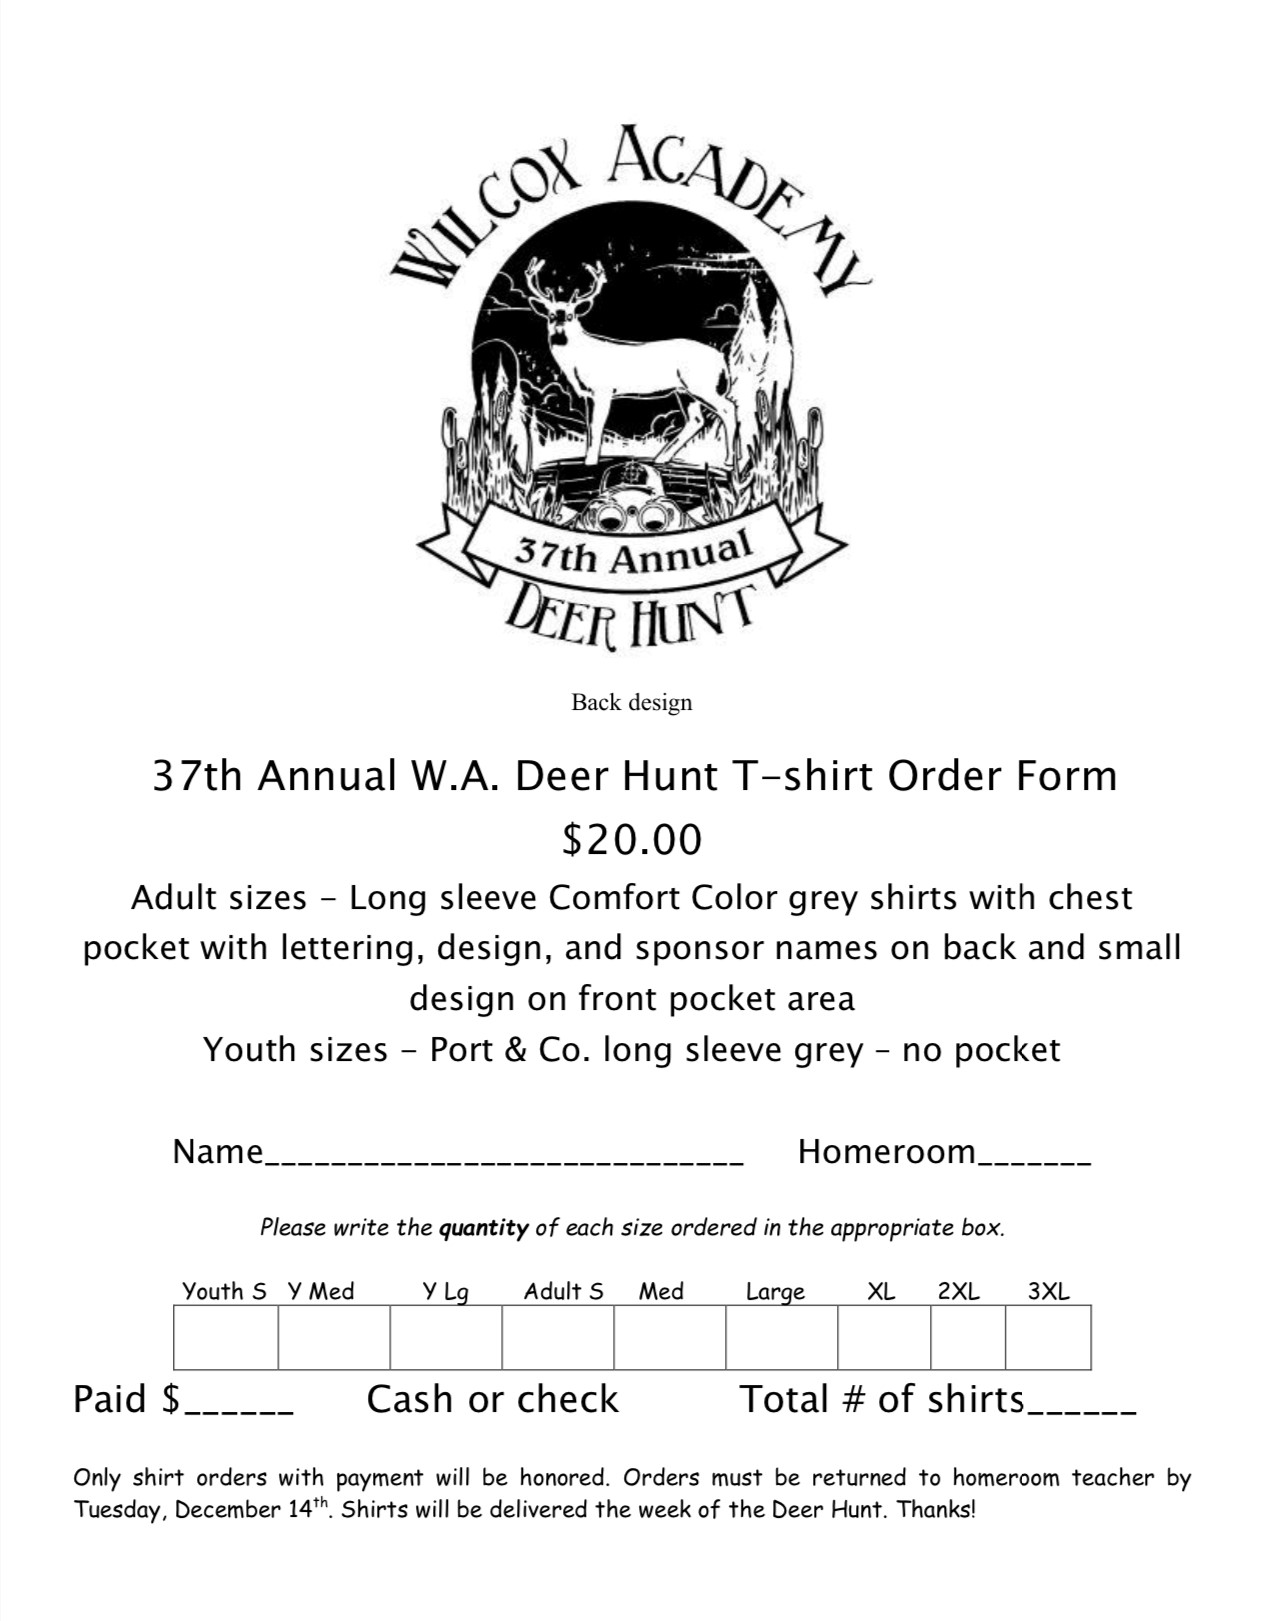 Deer Hunt Tshirt Order Form